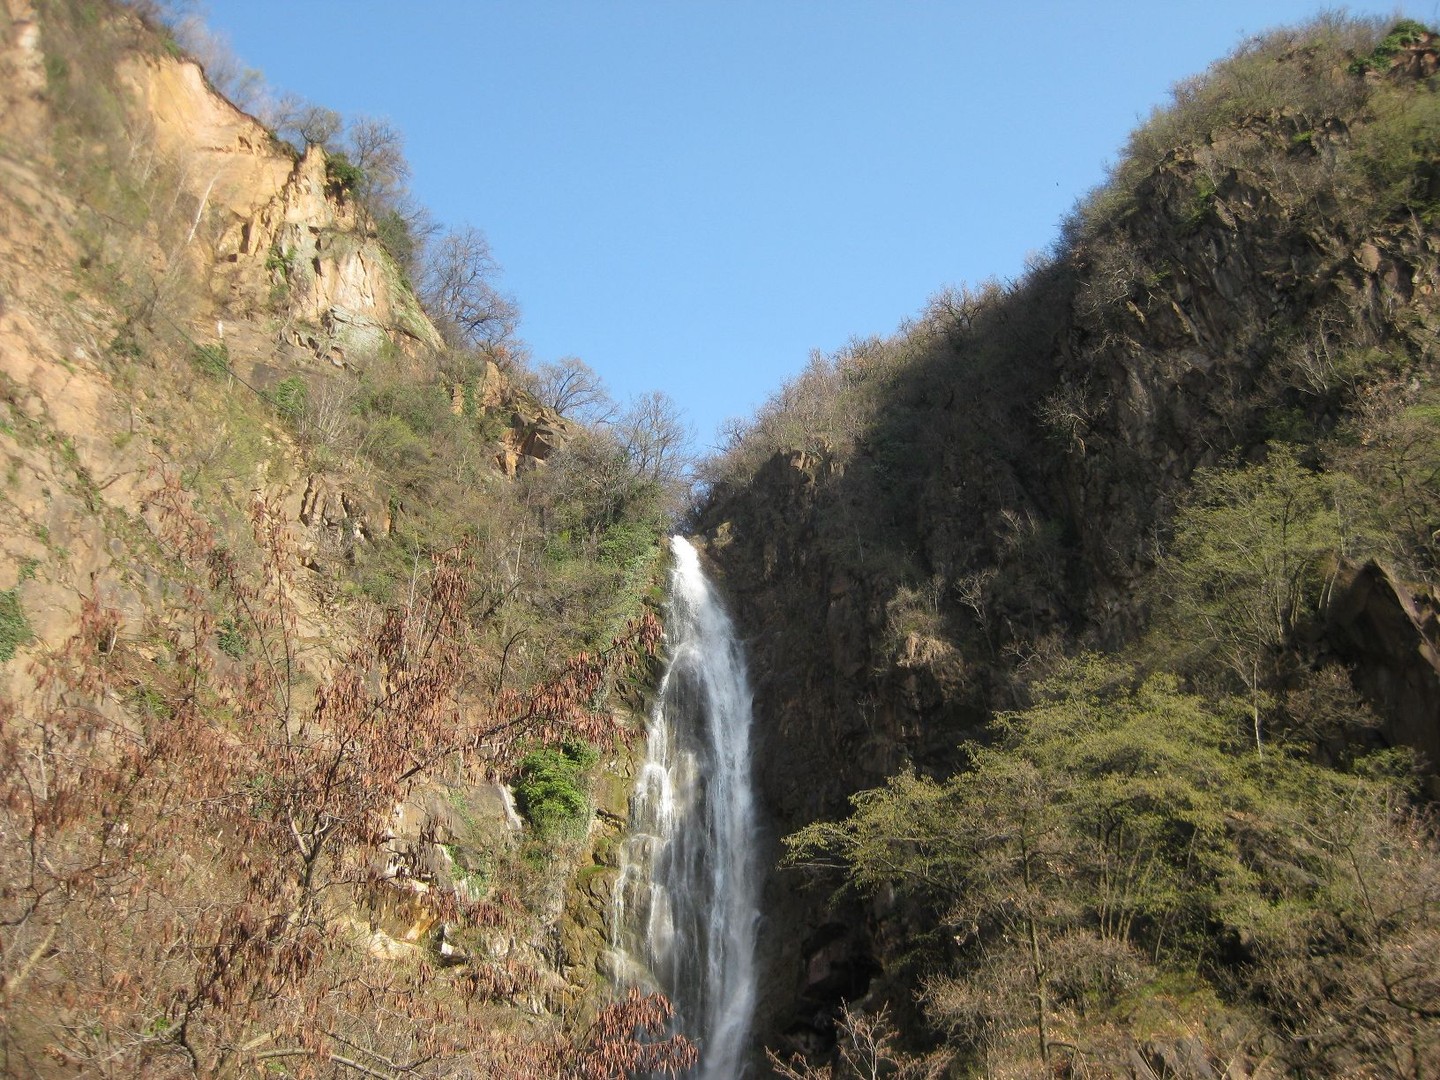 Wasserfall Fagenbach am Beginn der Jenesien-Strassen